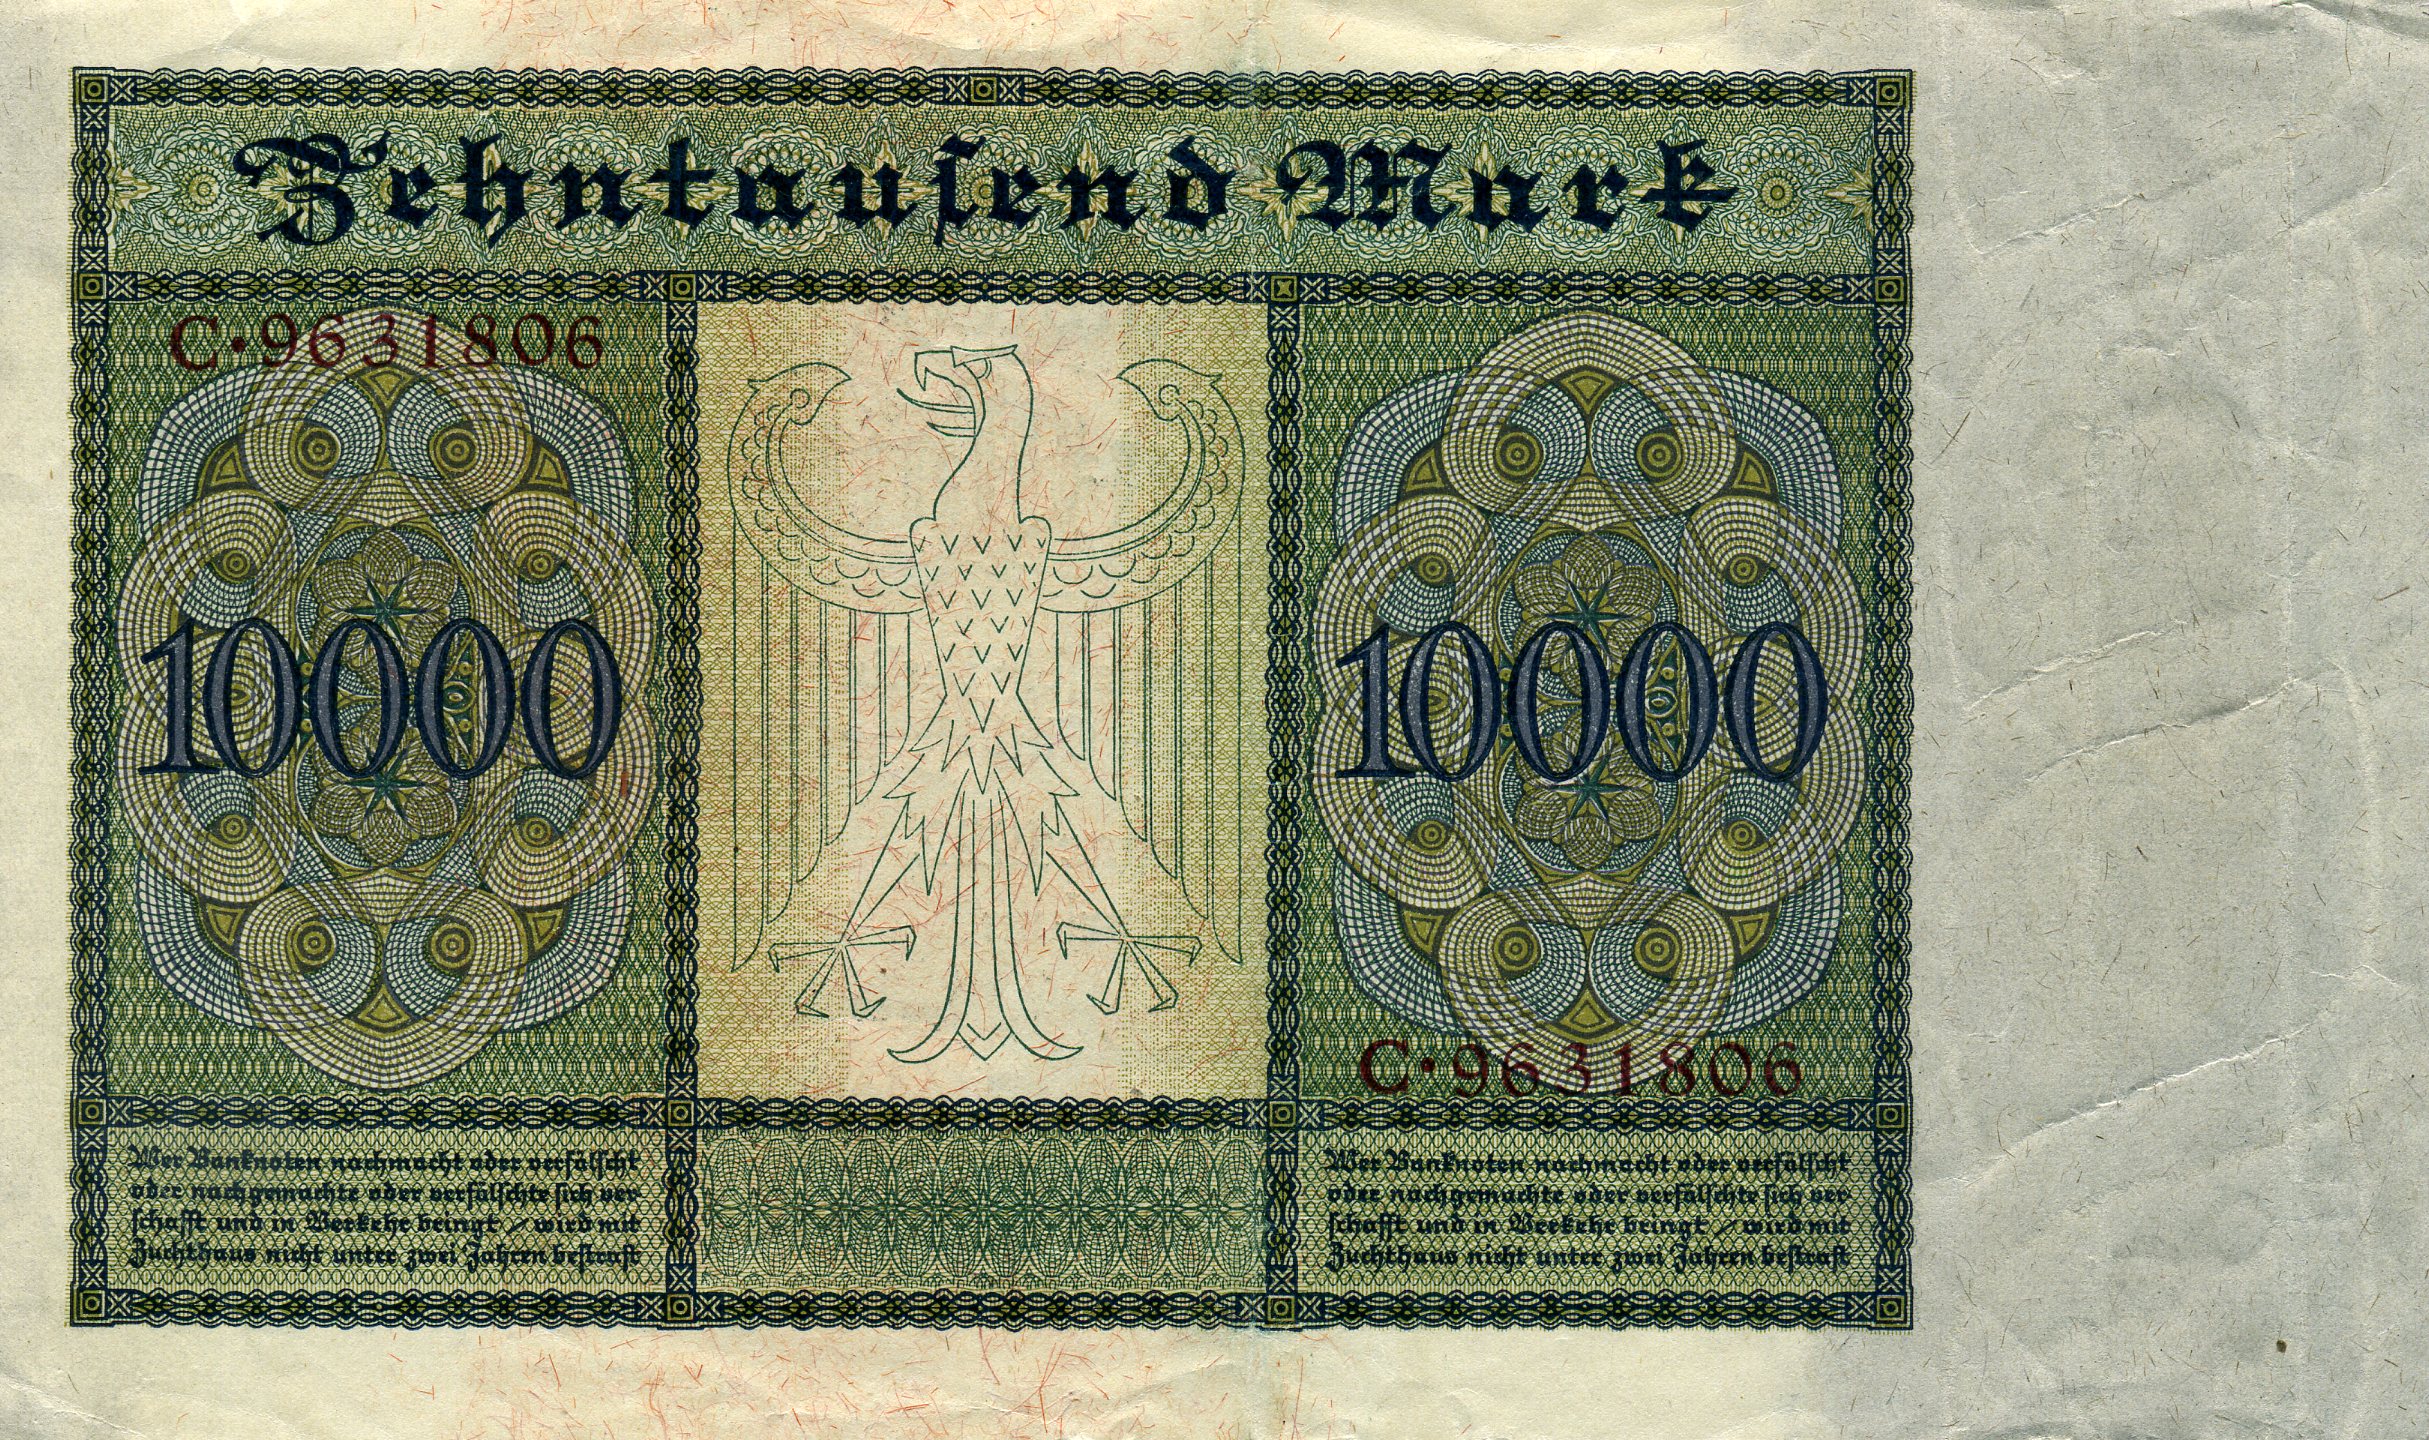 10000 марок 19 января 1922 года. Красная печать. Реверс. Реферат Рефератович.